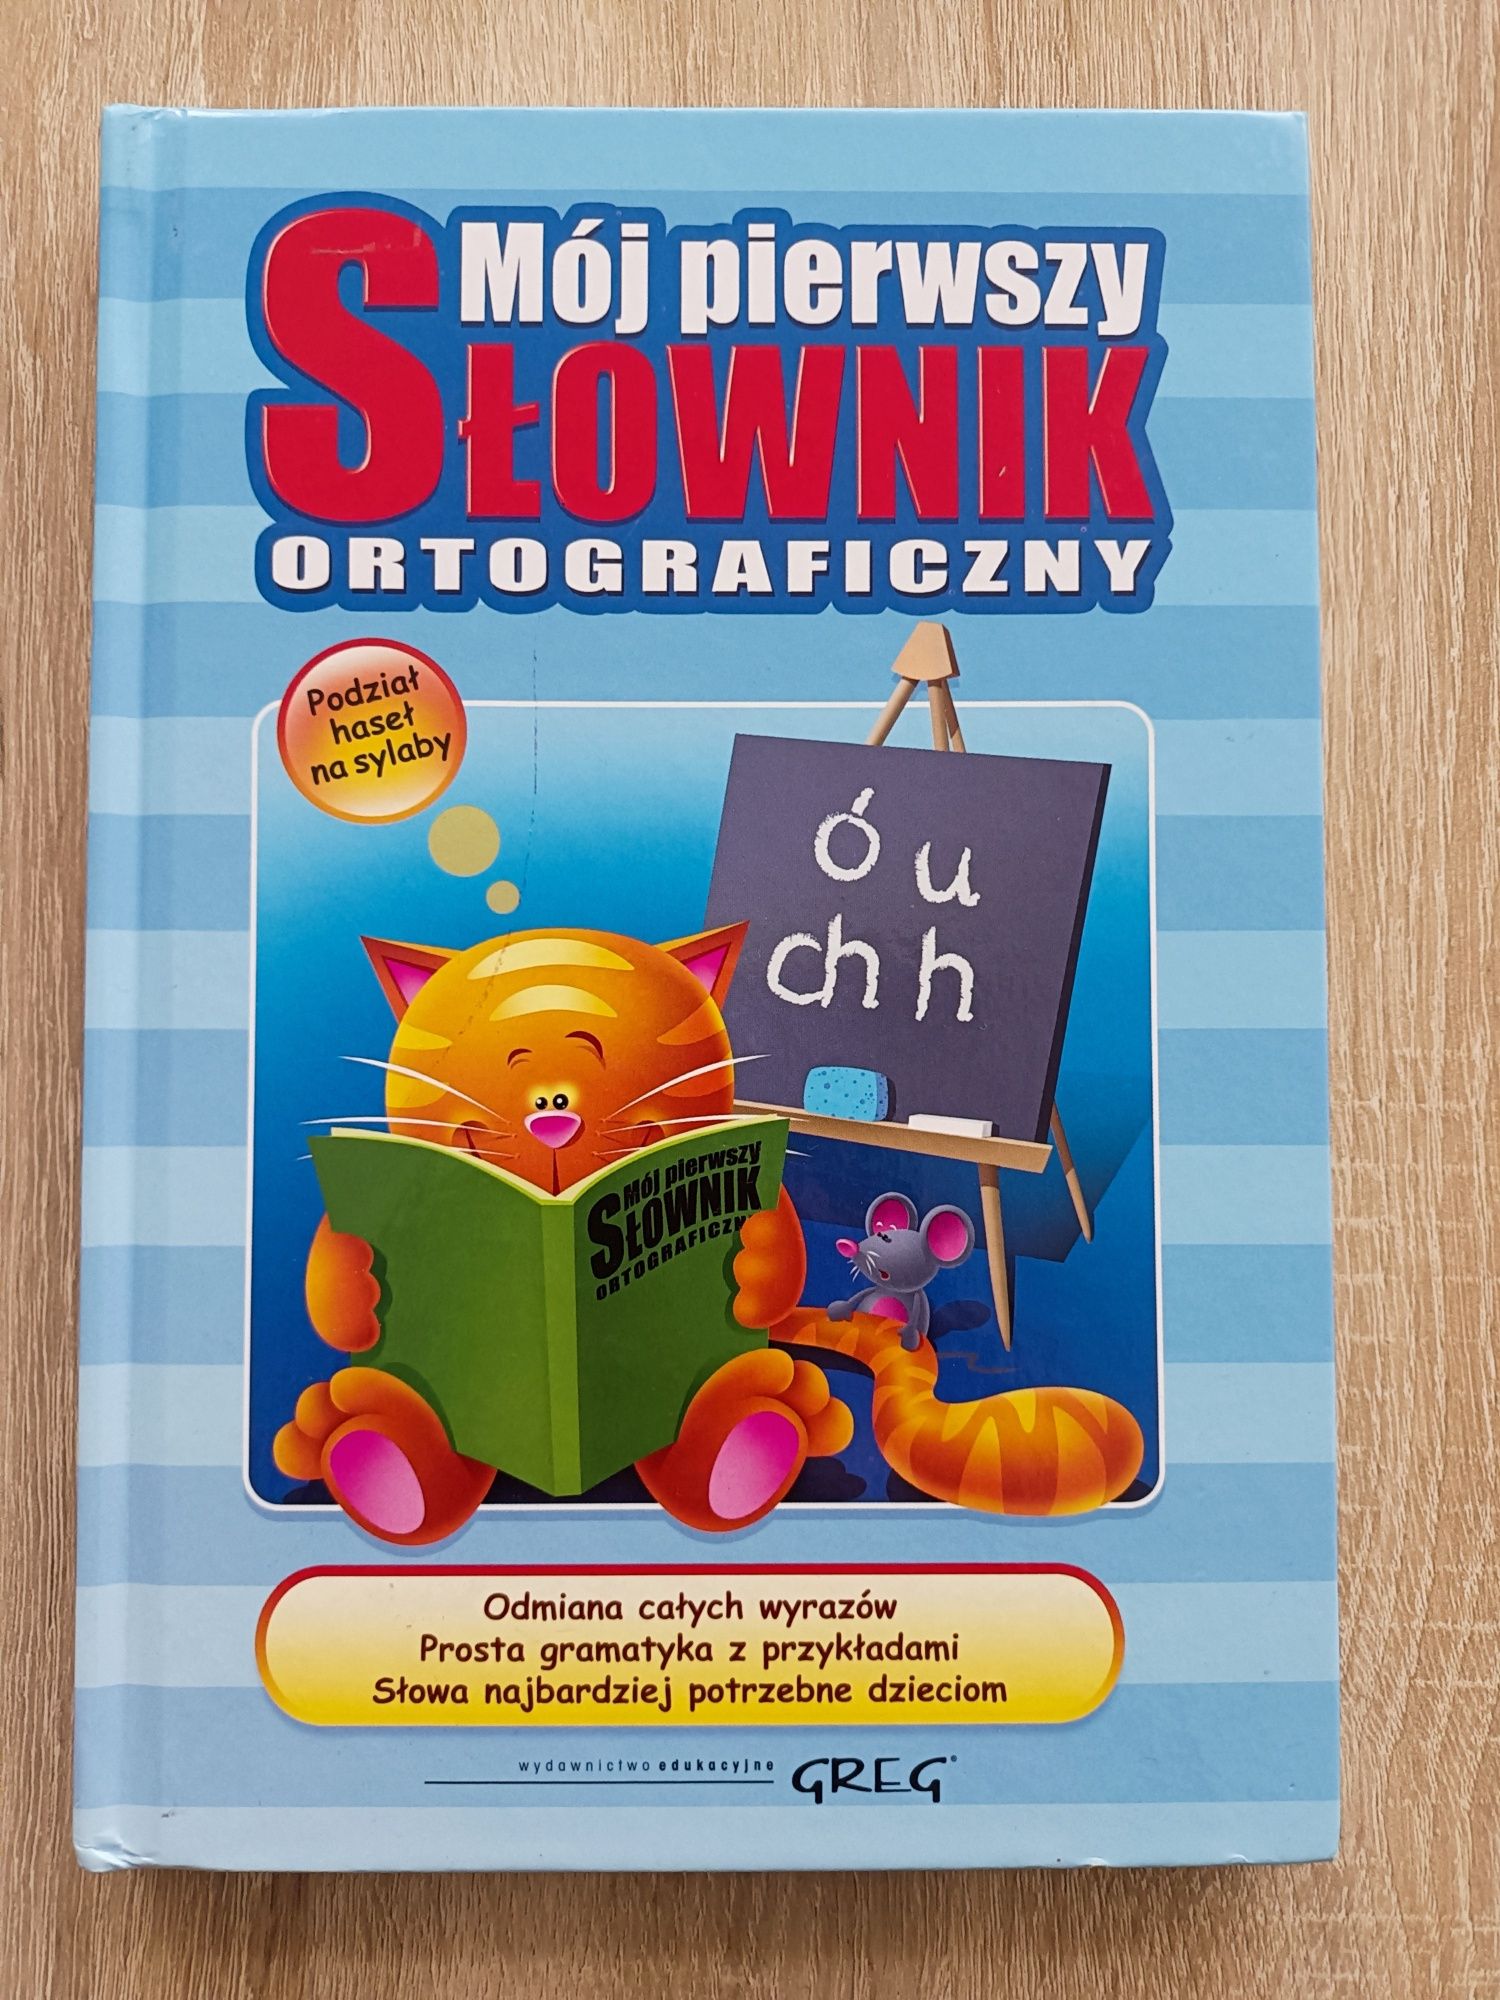 "Mój pierwszy słownik ortograficzny"